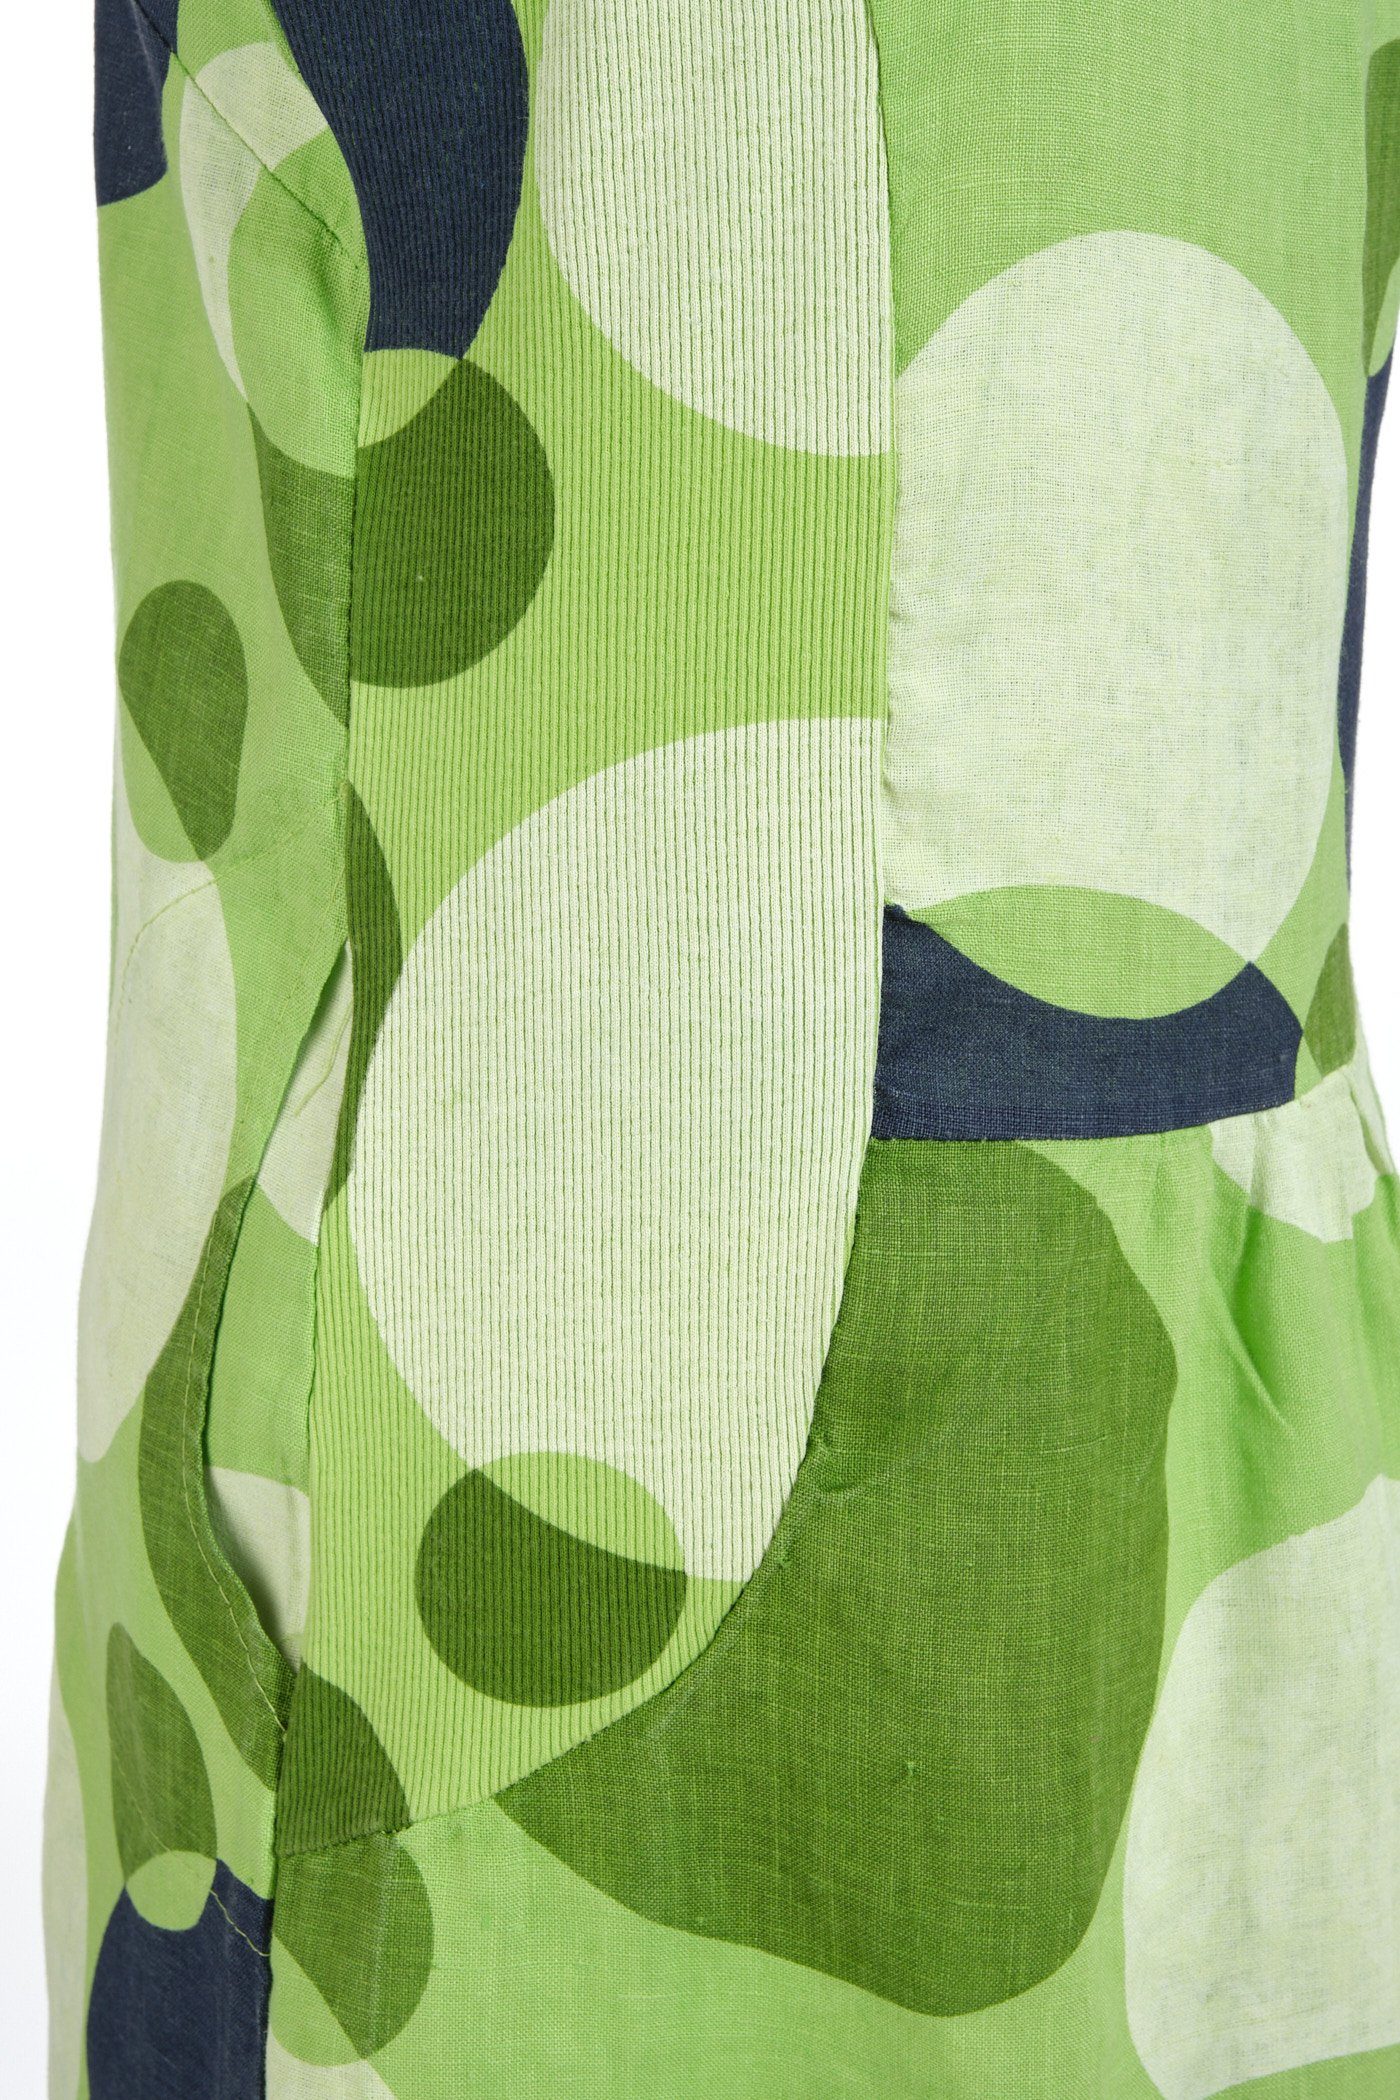 PEKIVESSA Sommerkleid (1-tlg) Damen apfelgrün mit Leinenkleid knielang Punkten kurzarm